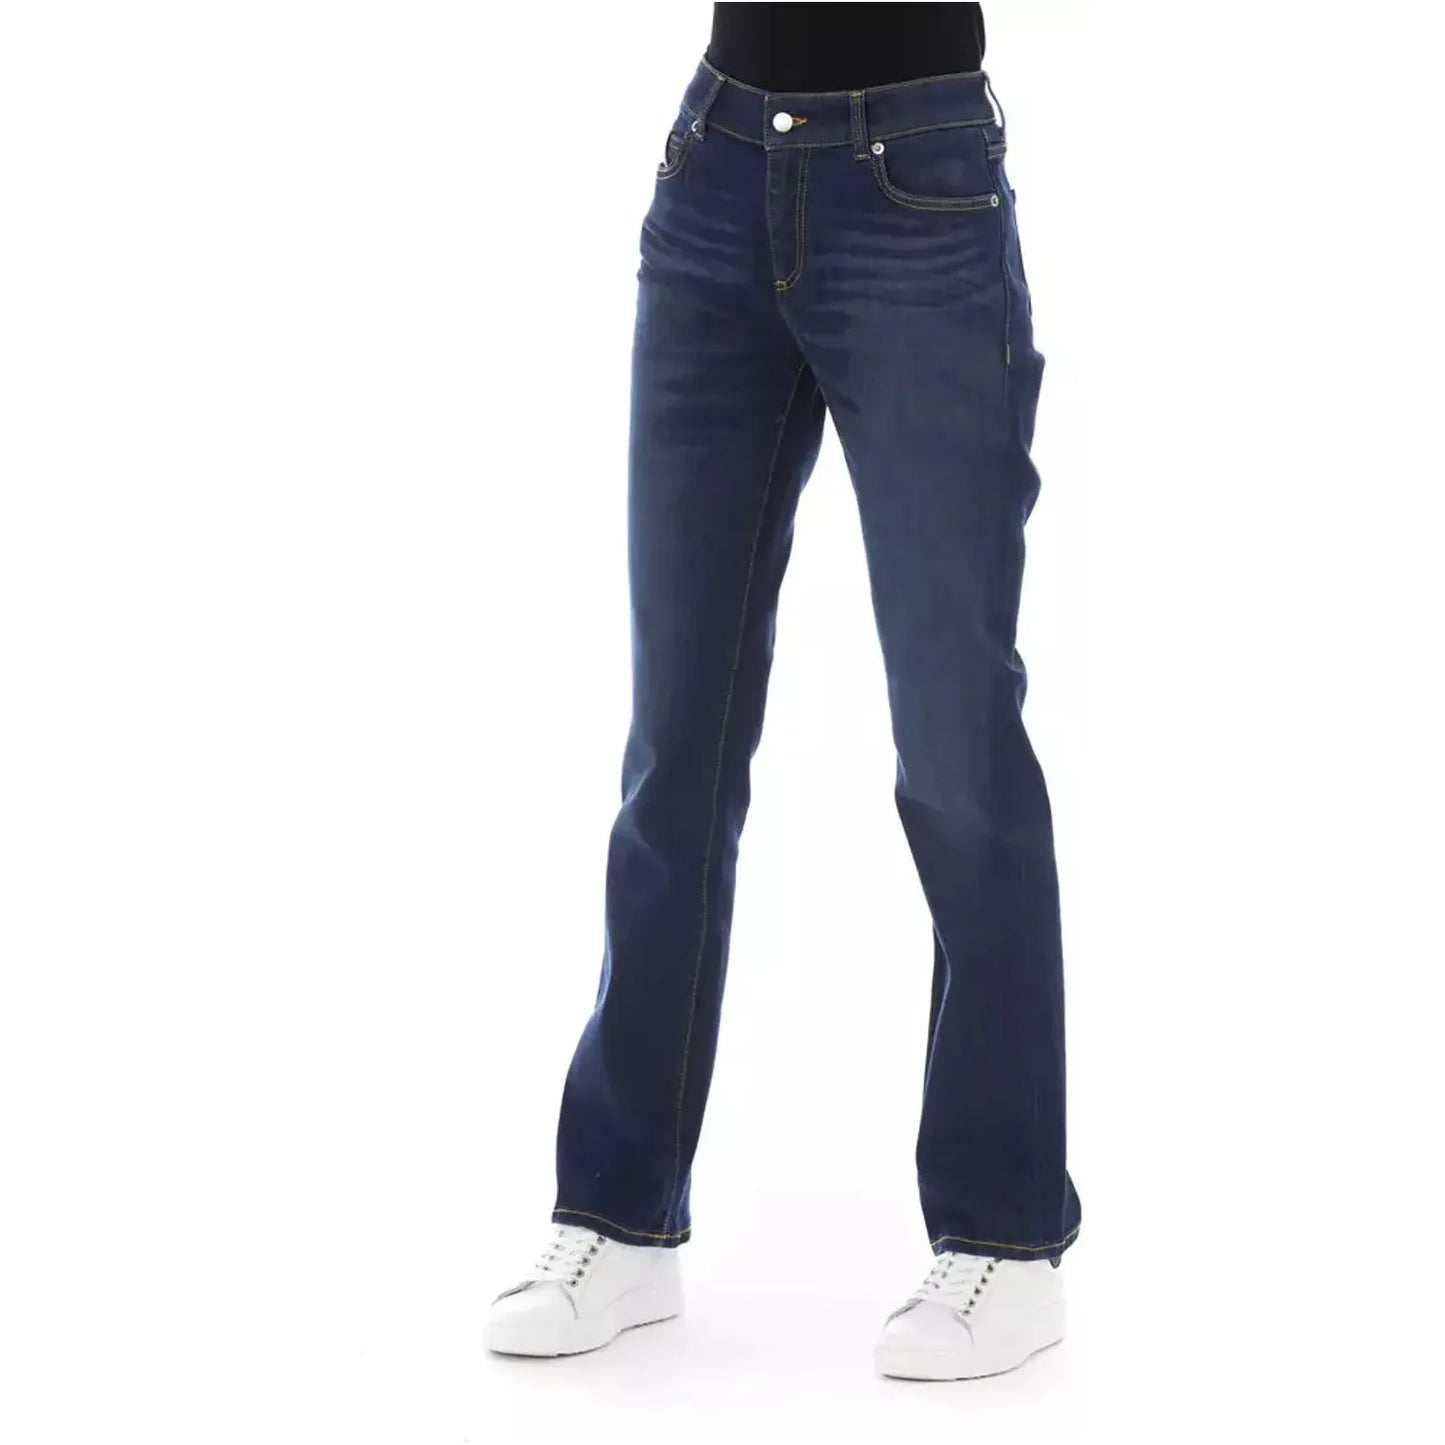 Baldinini Trend Chic Tricolor Pocket Jeans blue-cotton-jeans-pant-67 product-23113-1260909528-21-67def692-c72.webp